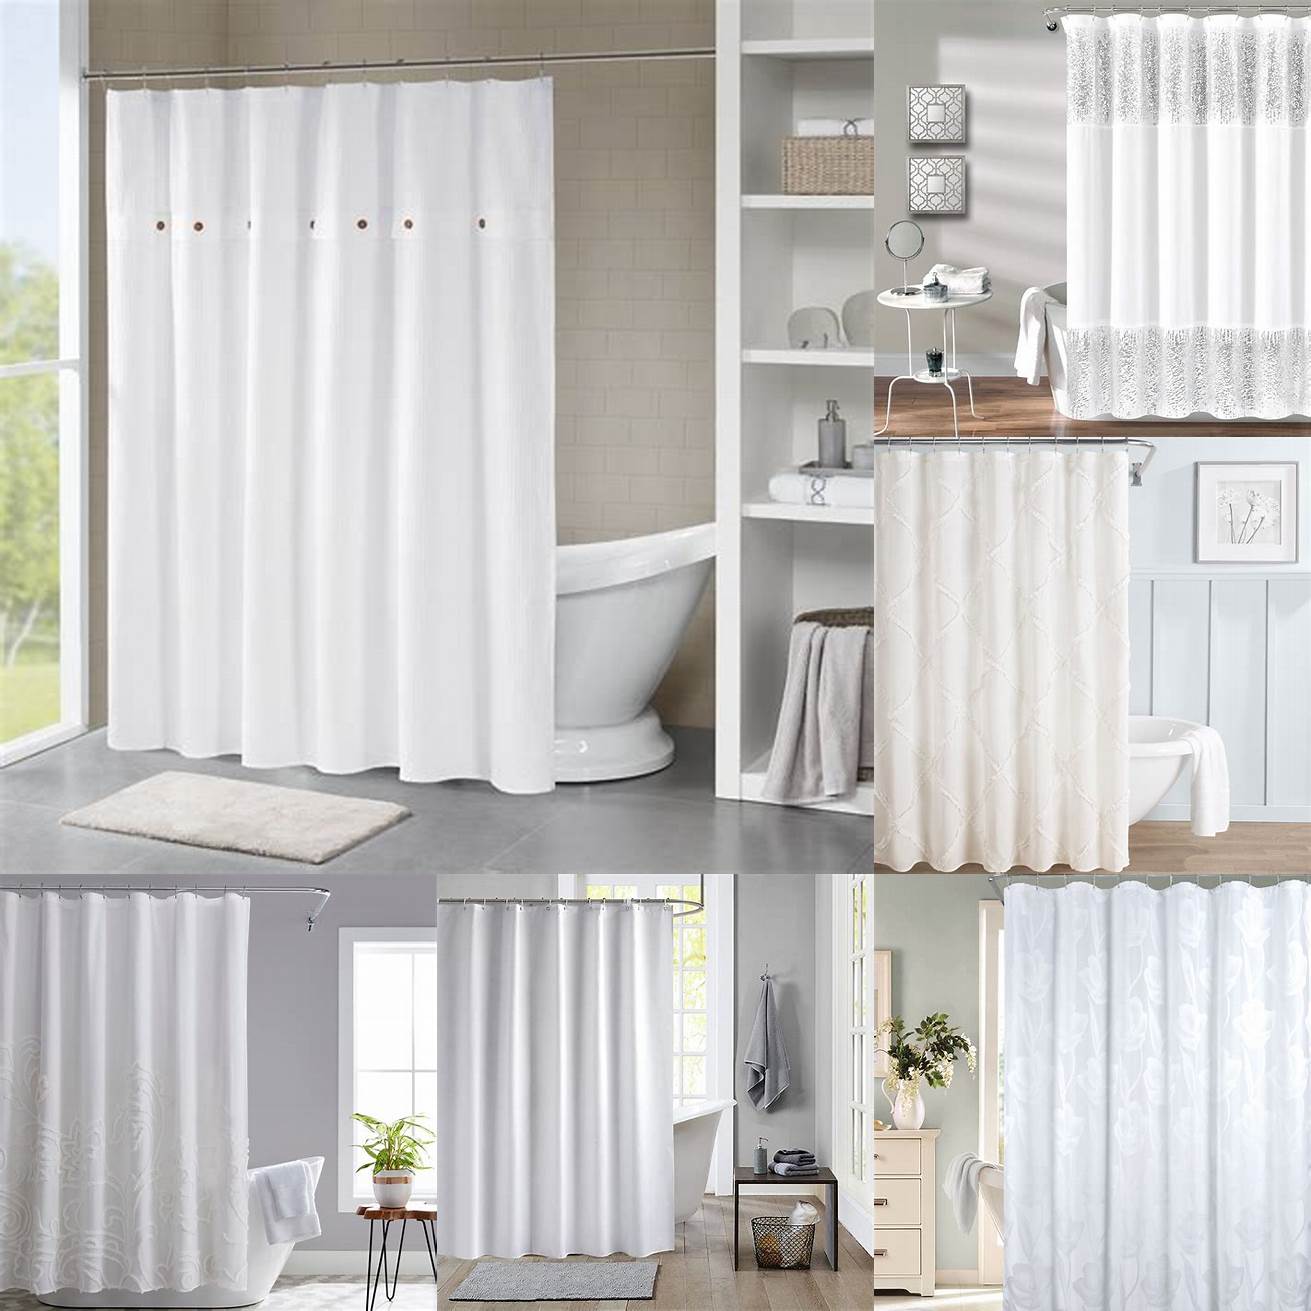 Minimalist white shower curtain